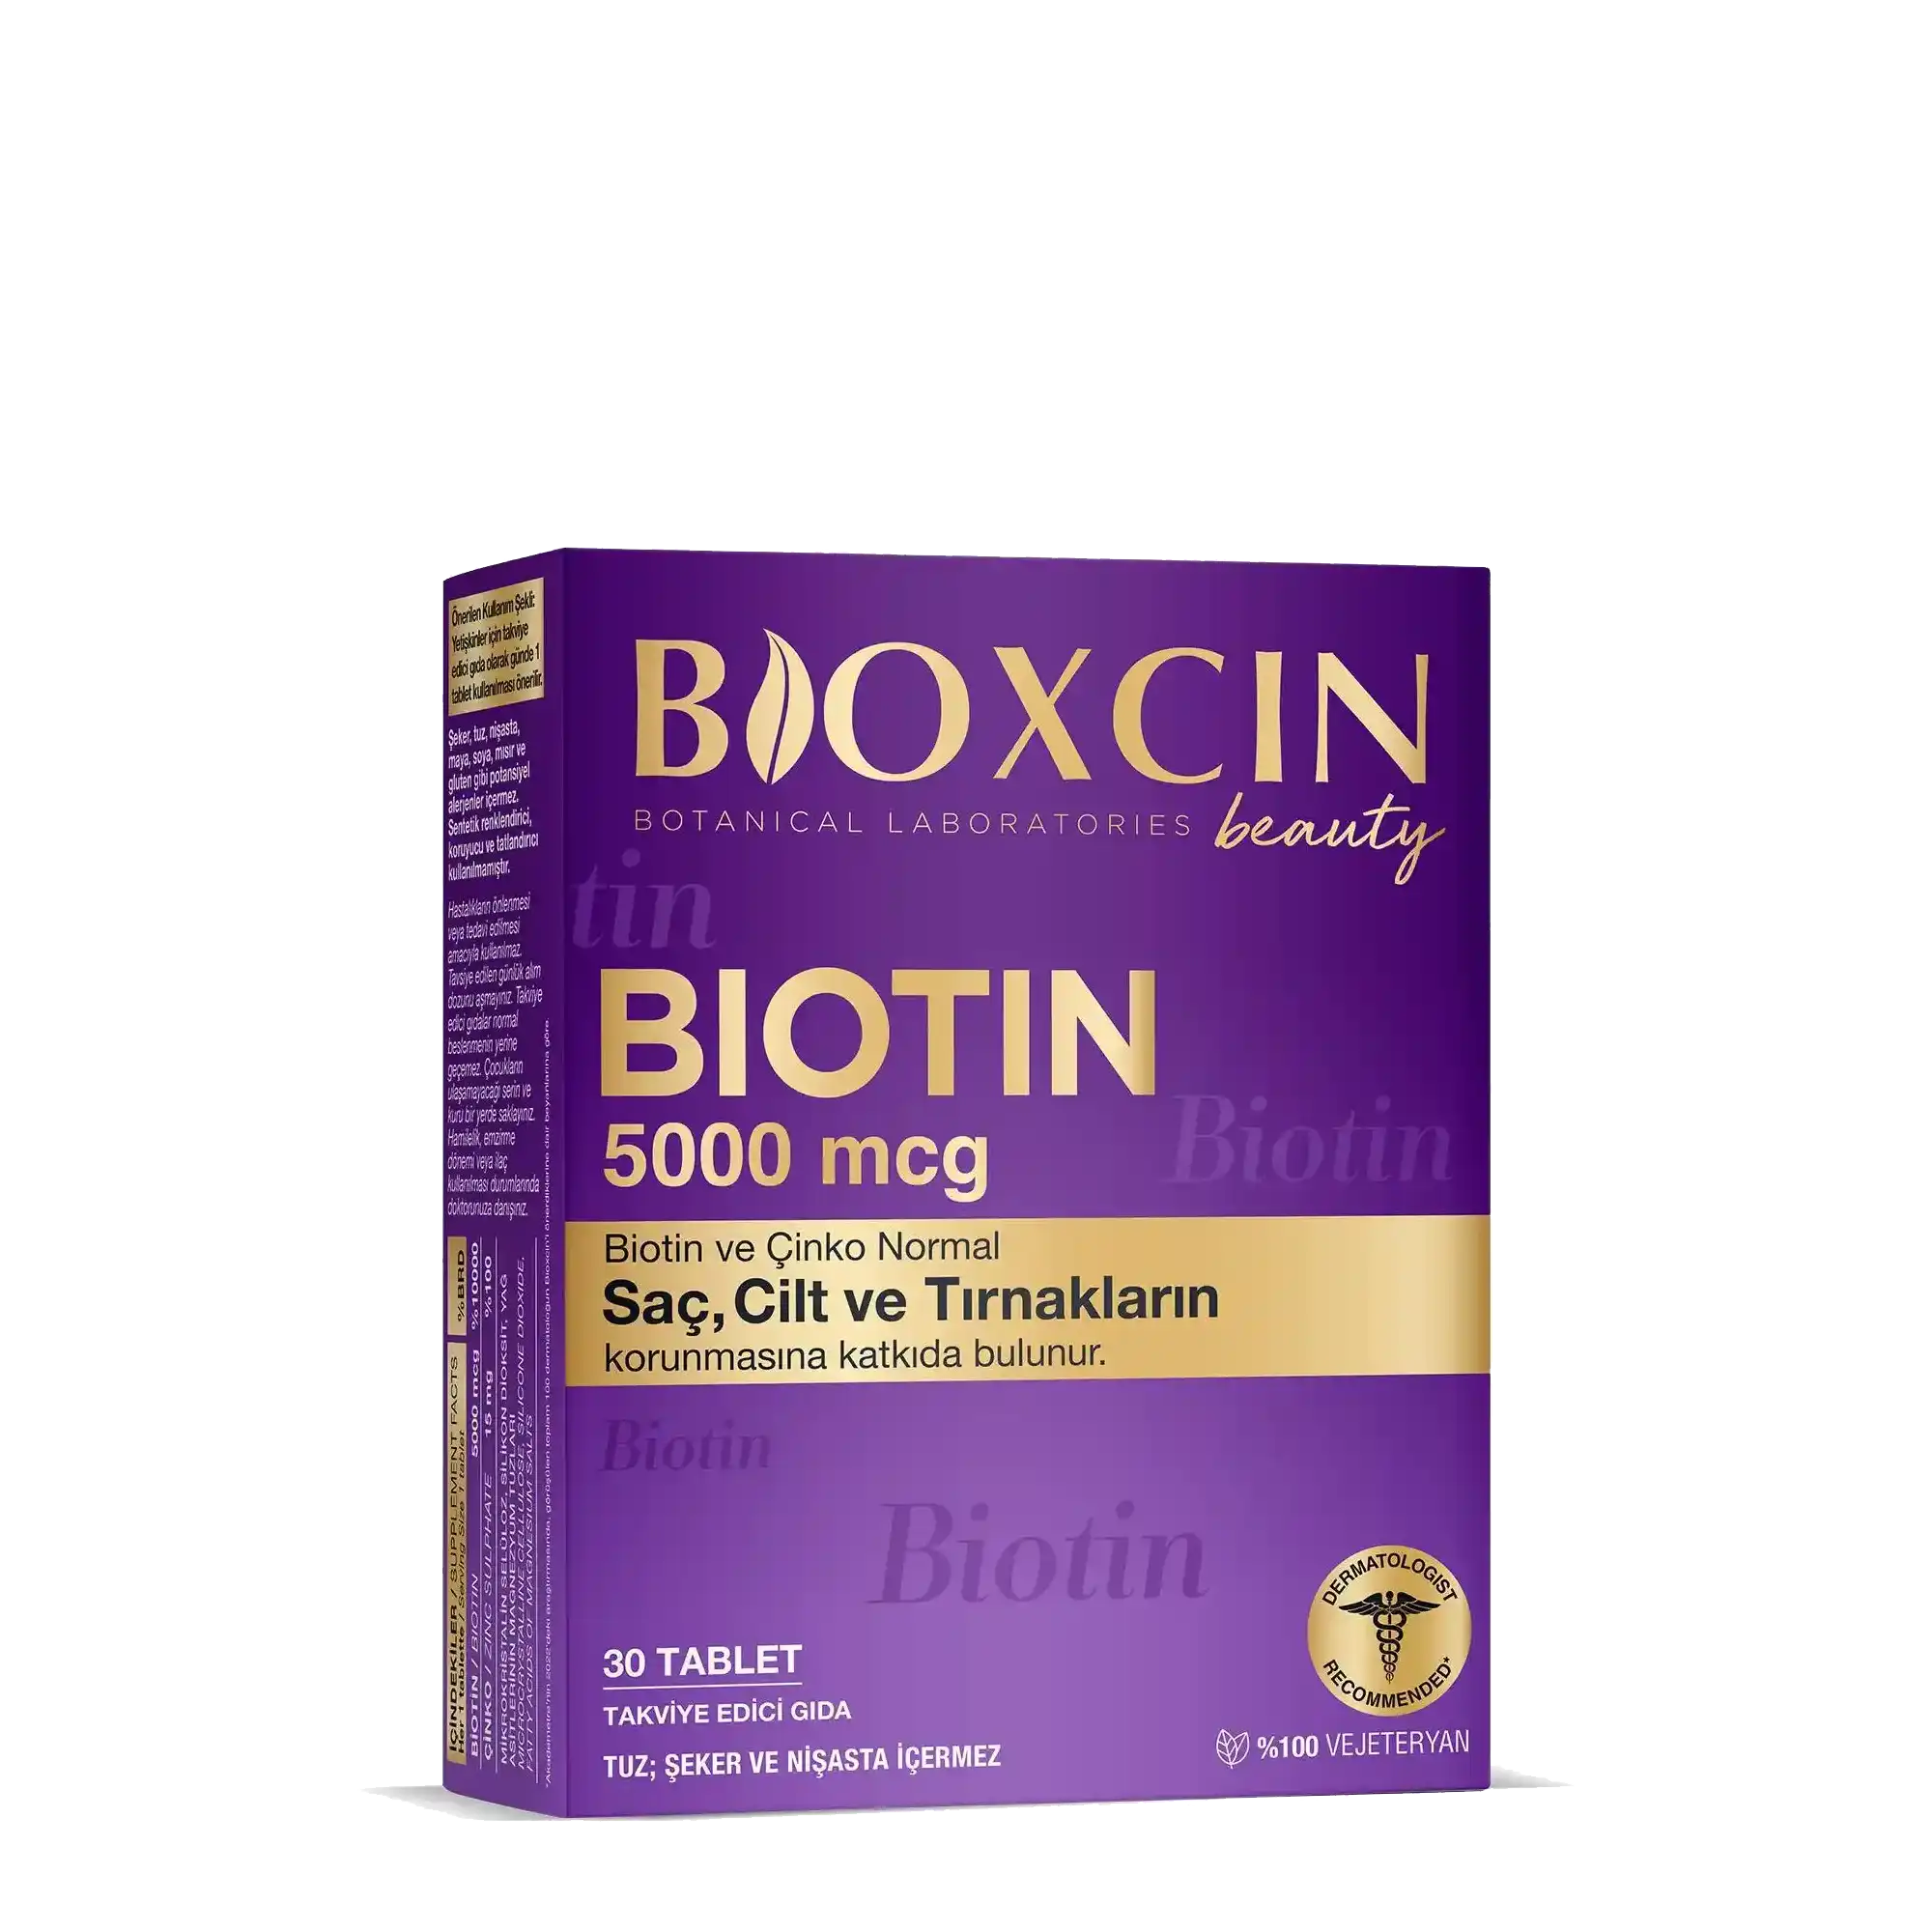 B'oxcin Biotin Tablet